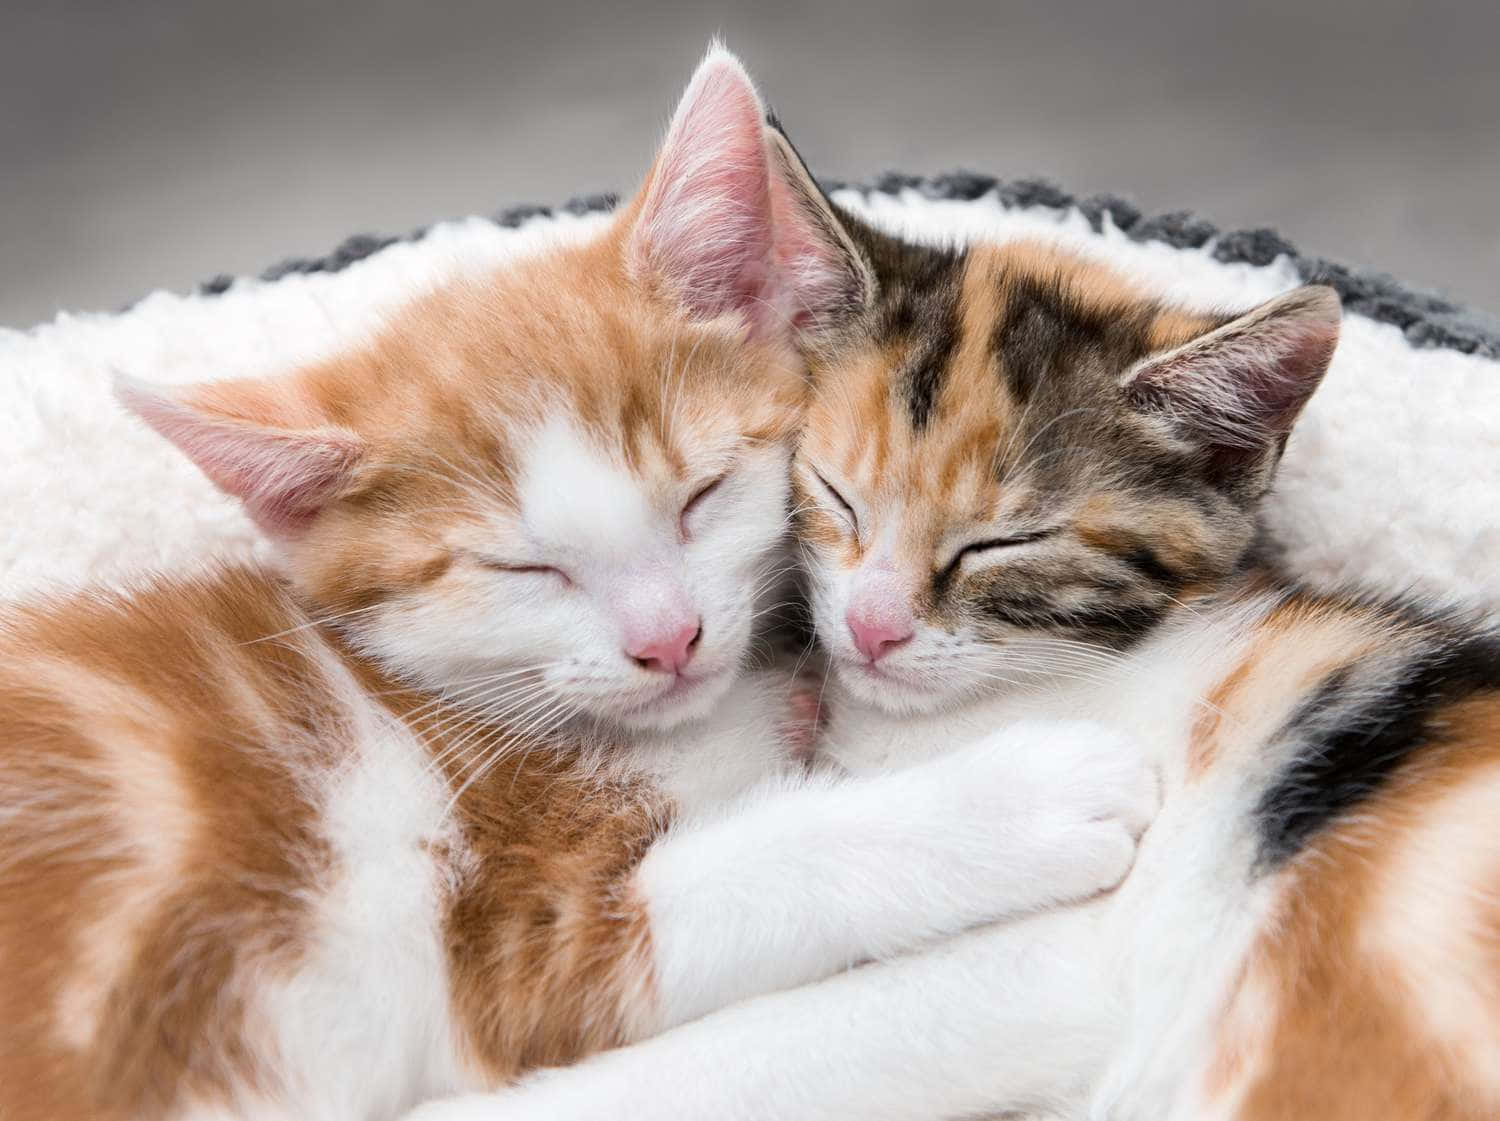 Imagende Gatitos Adorables Durmiendo Juntos